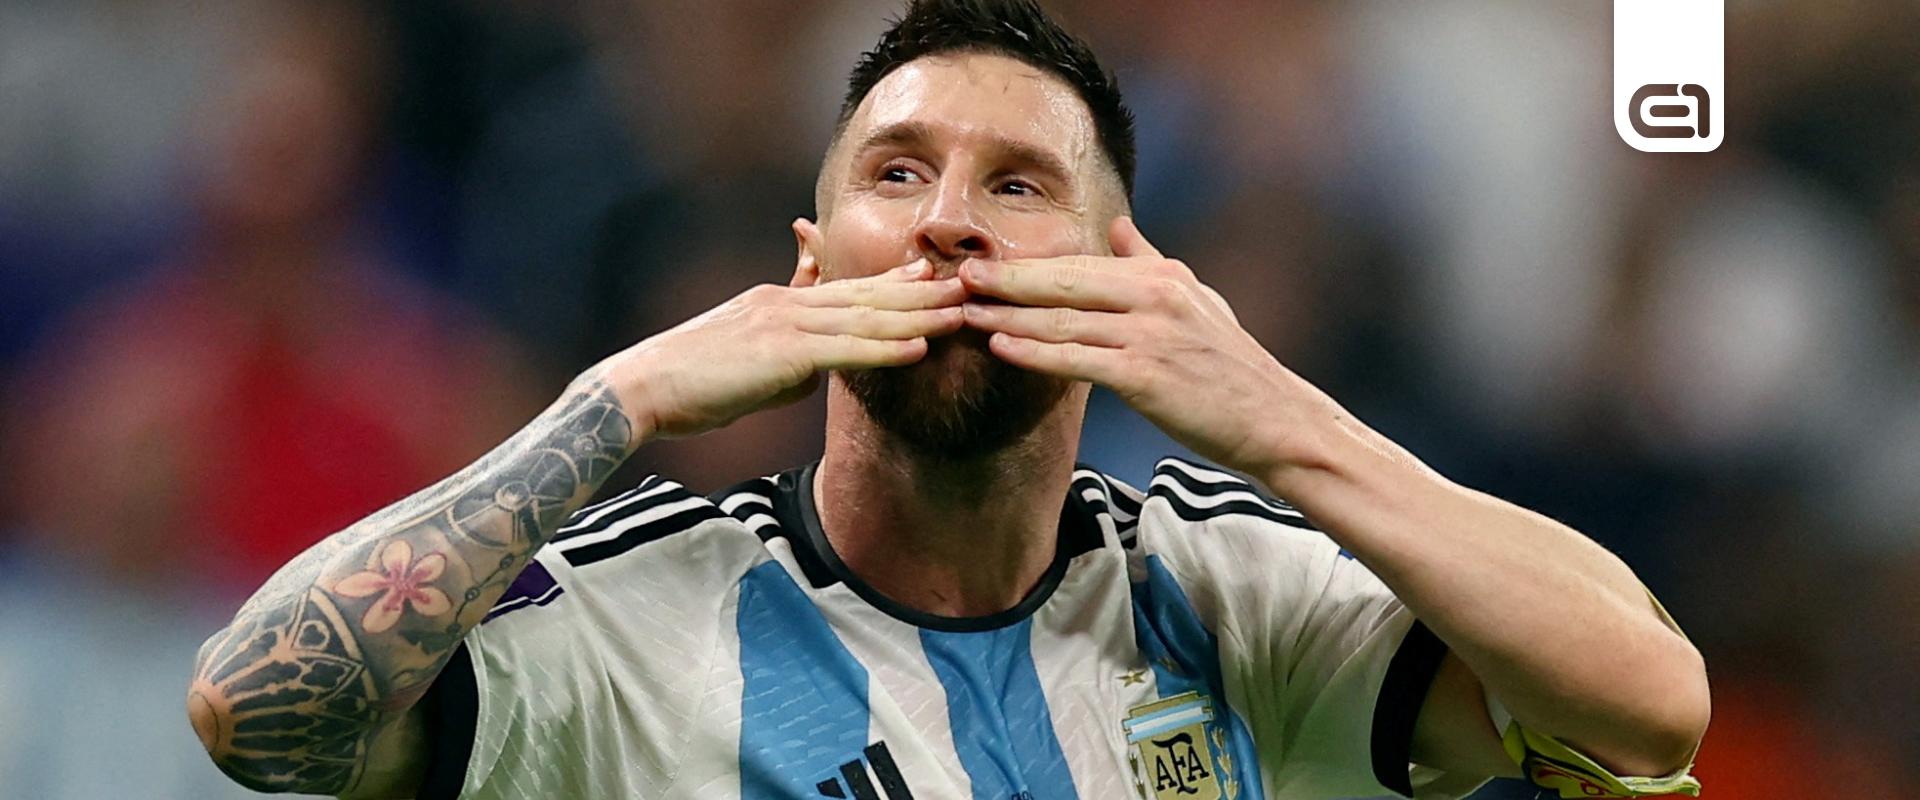 Soha nem látott felvételekkel jön a Messiről szóló dokusorozat